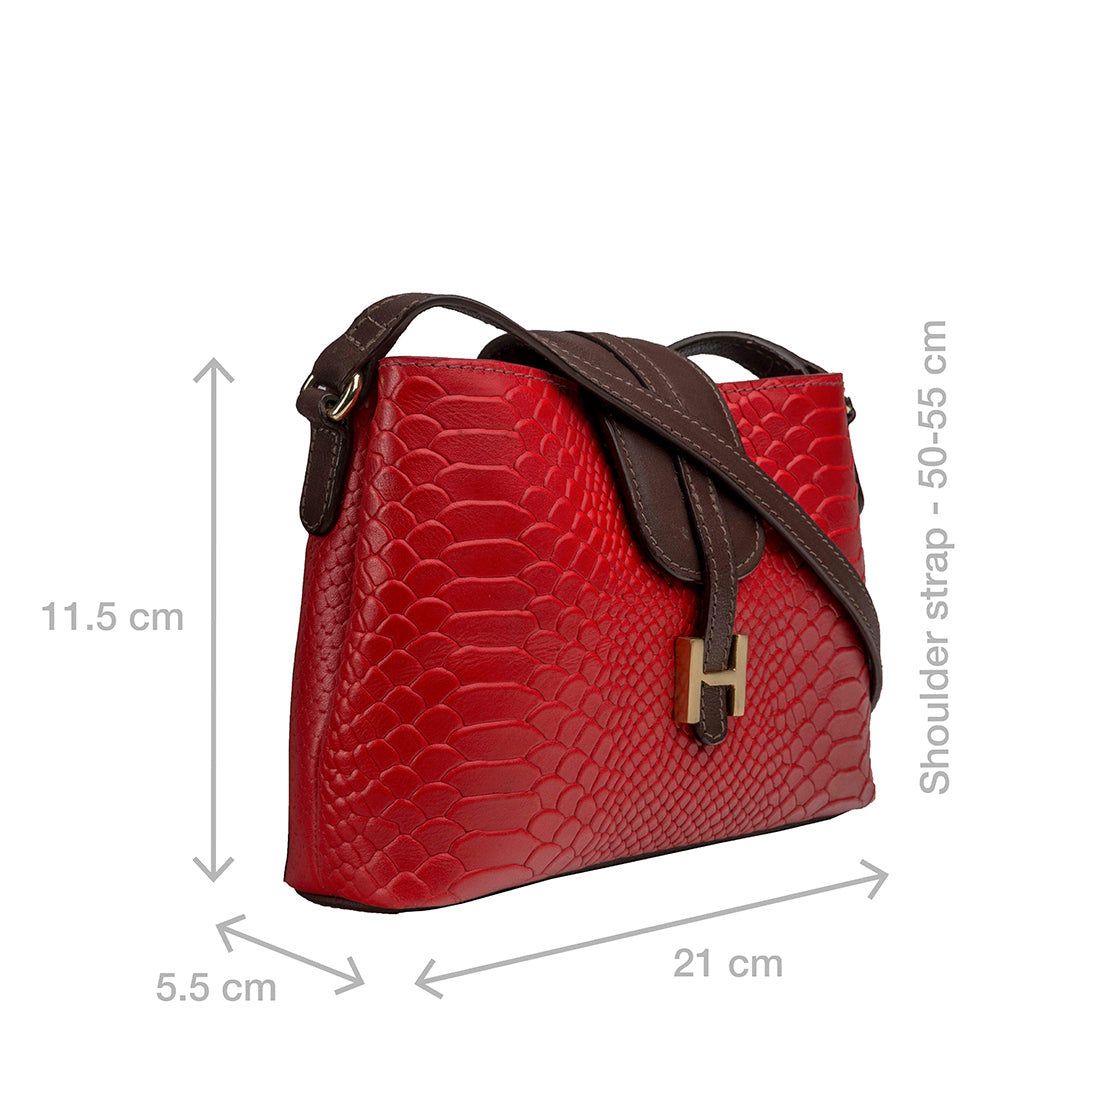 Hidesign Sling and Cross bags : Buy Hidesign EE AURORA 03 Women